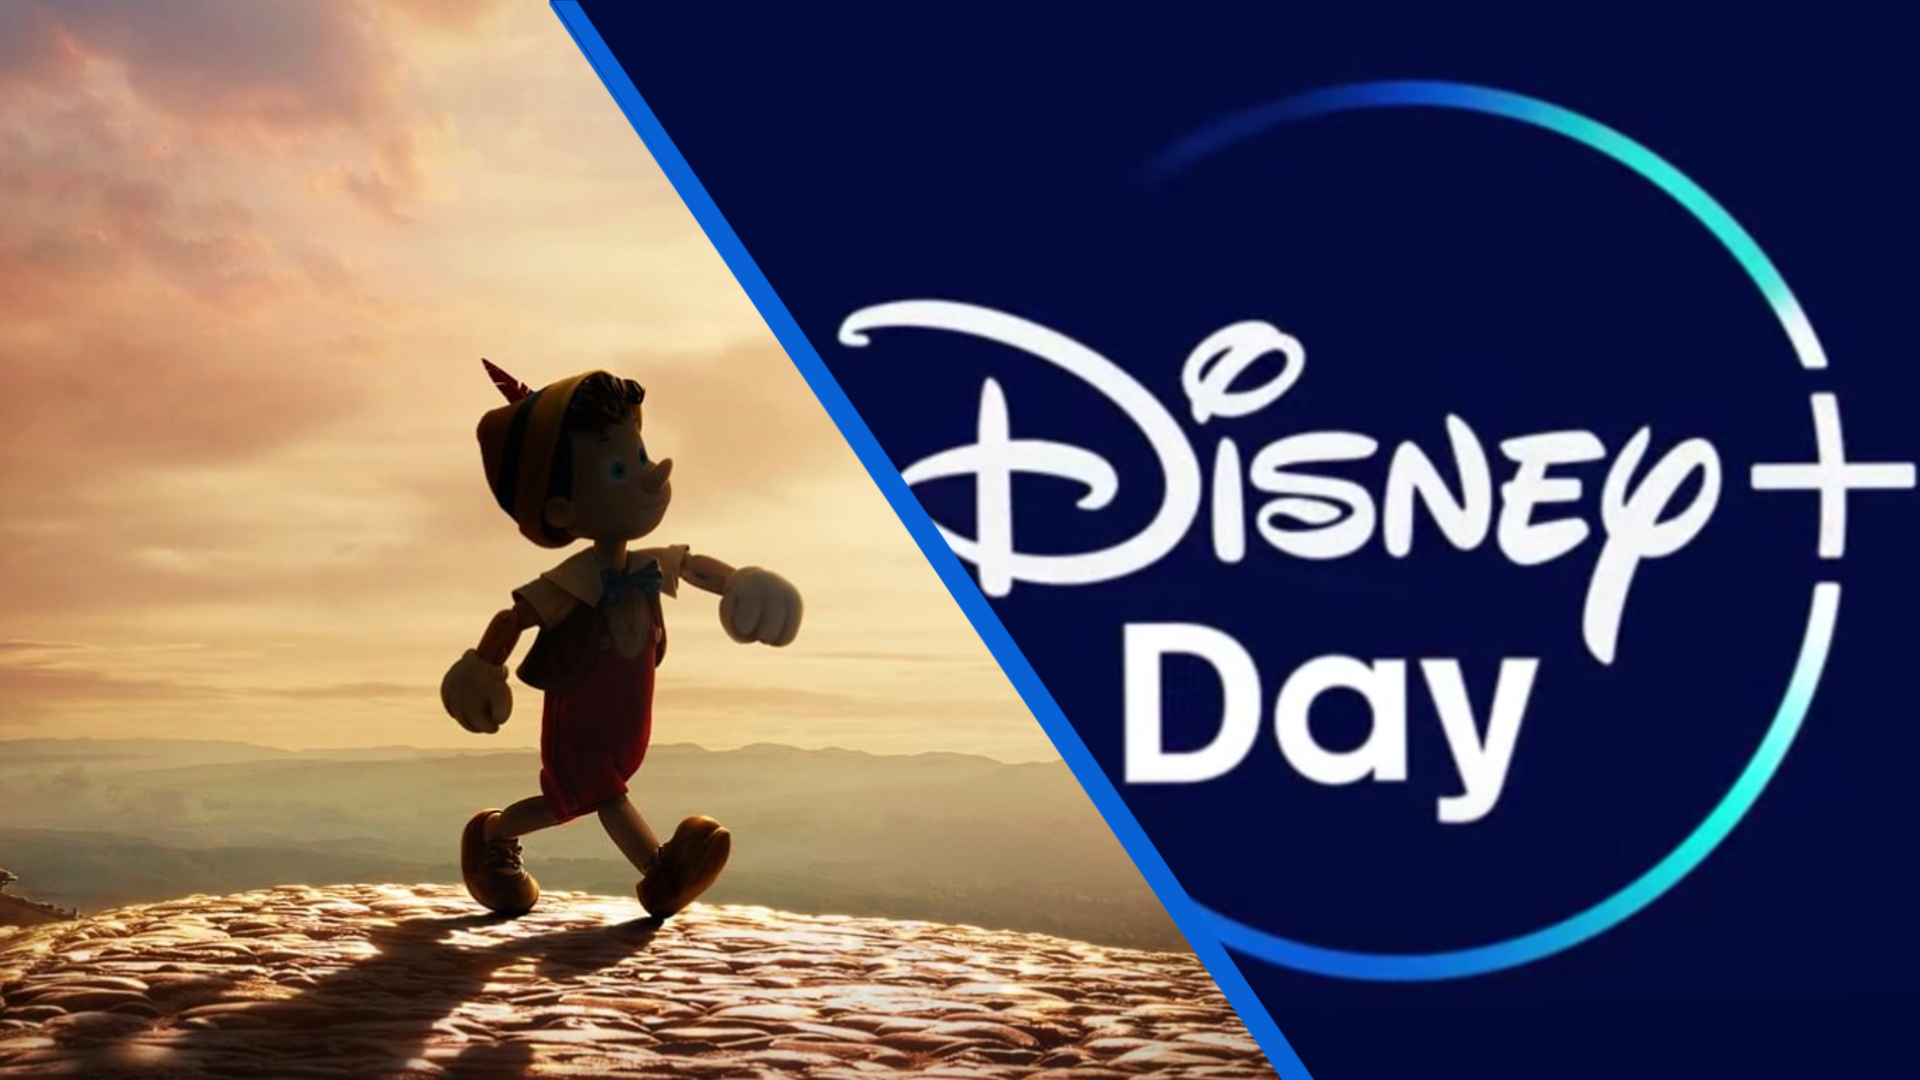 Disney Plus Day - Pinocchio